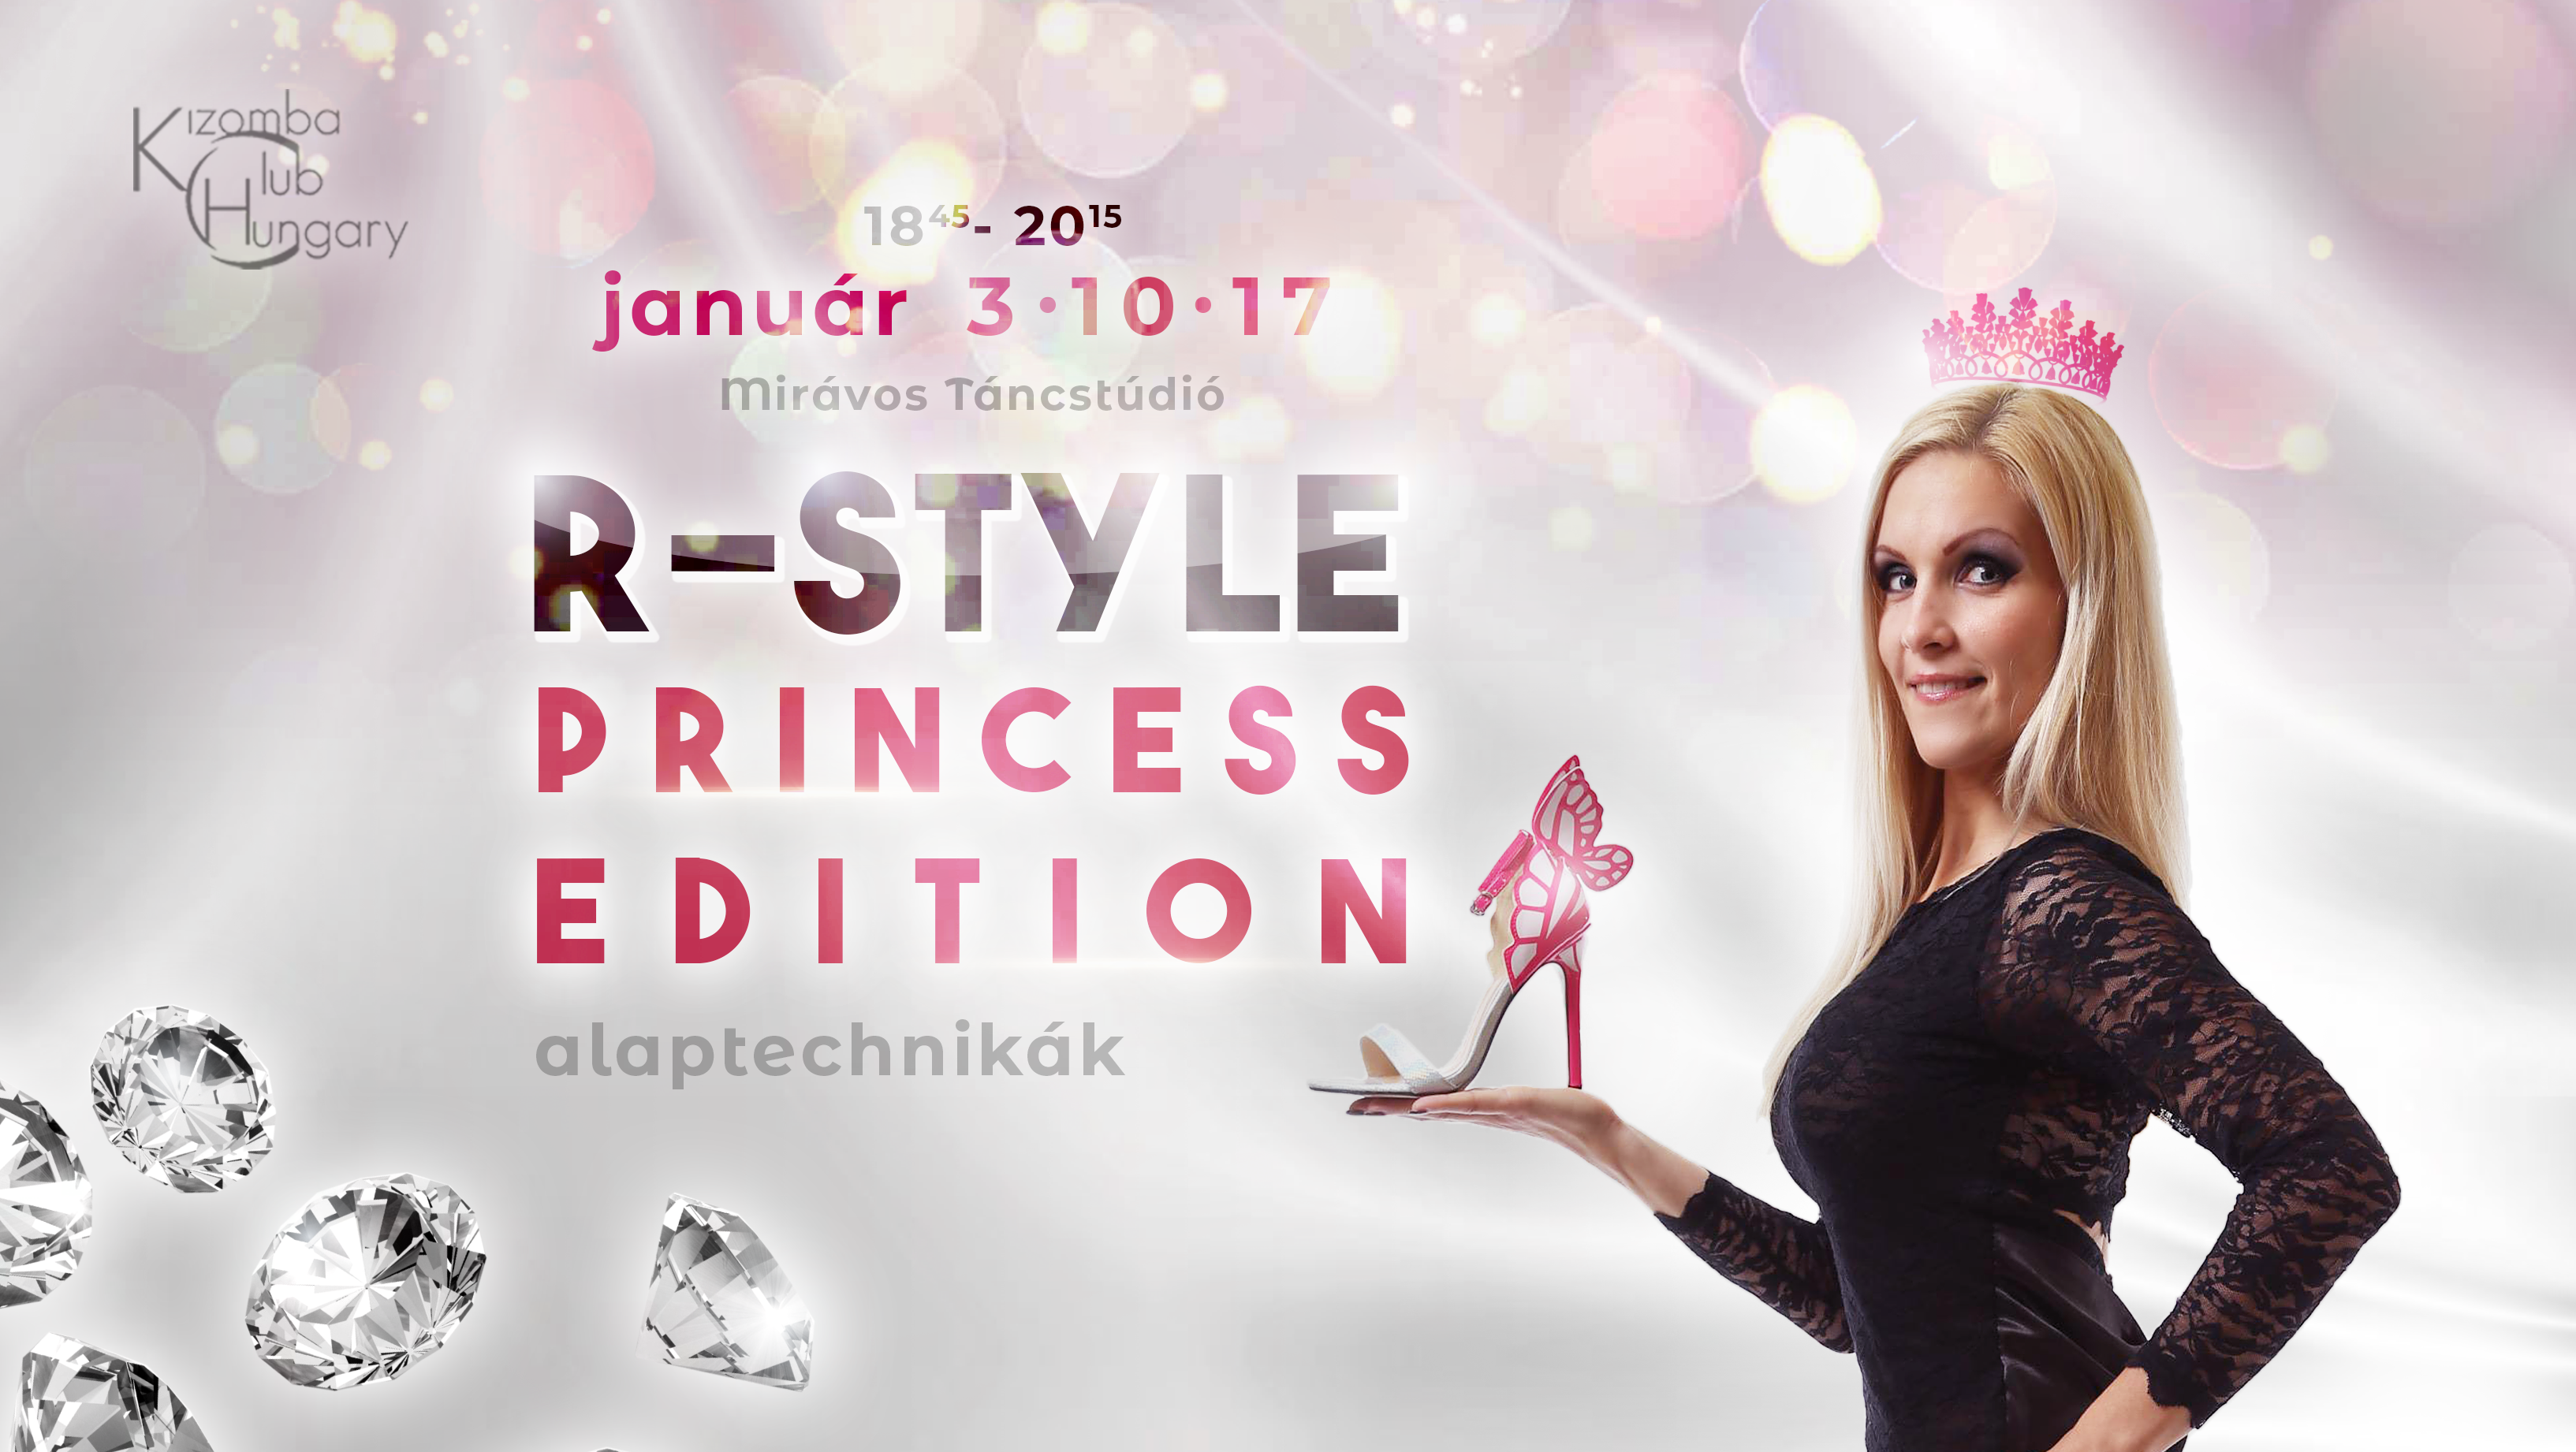 R-Style Princess Edition - alaptechnikák